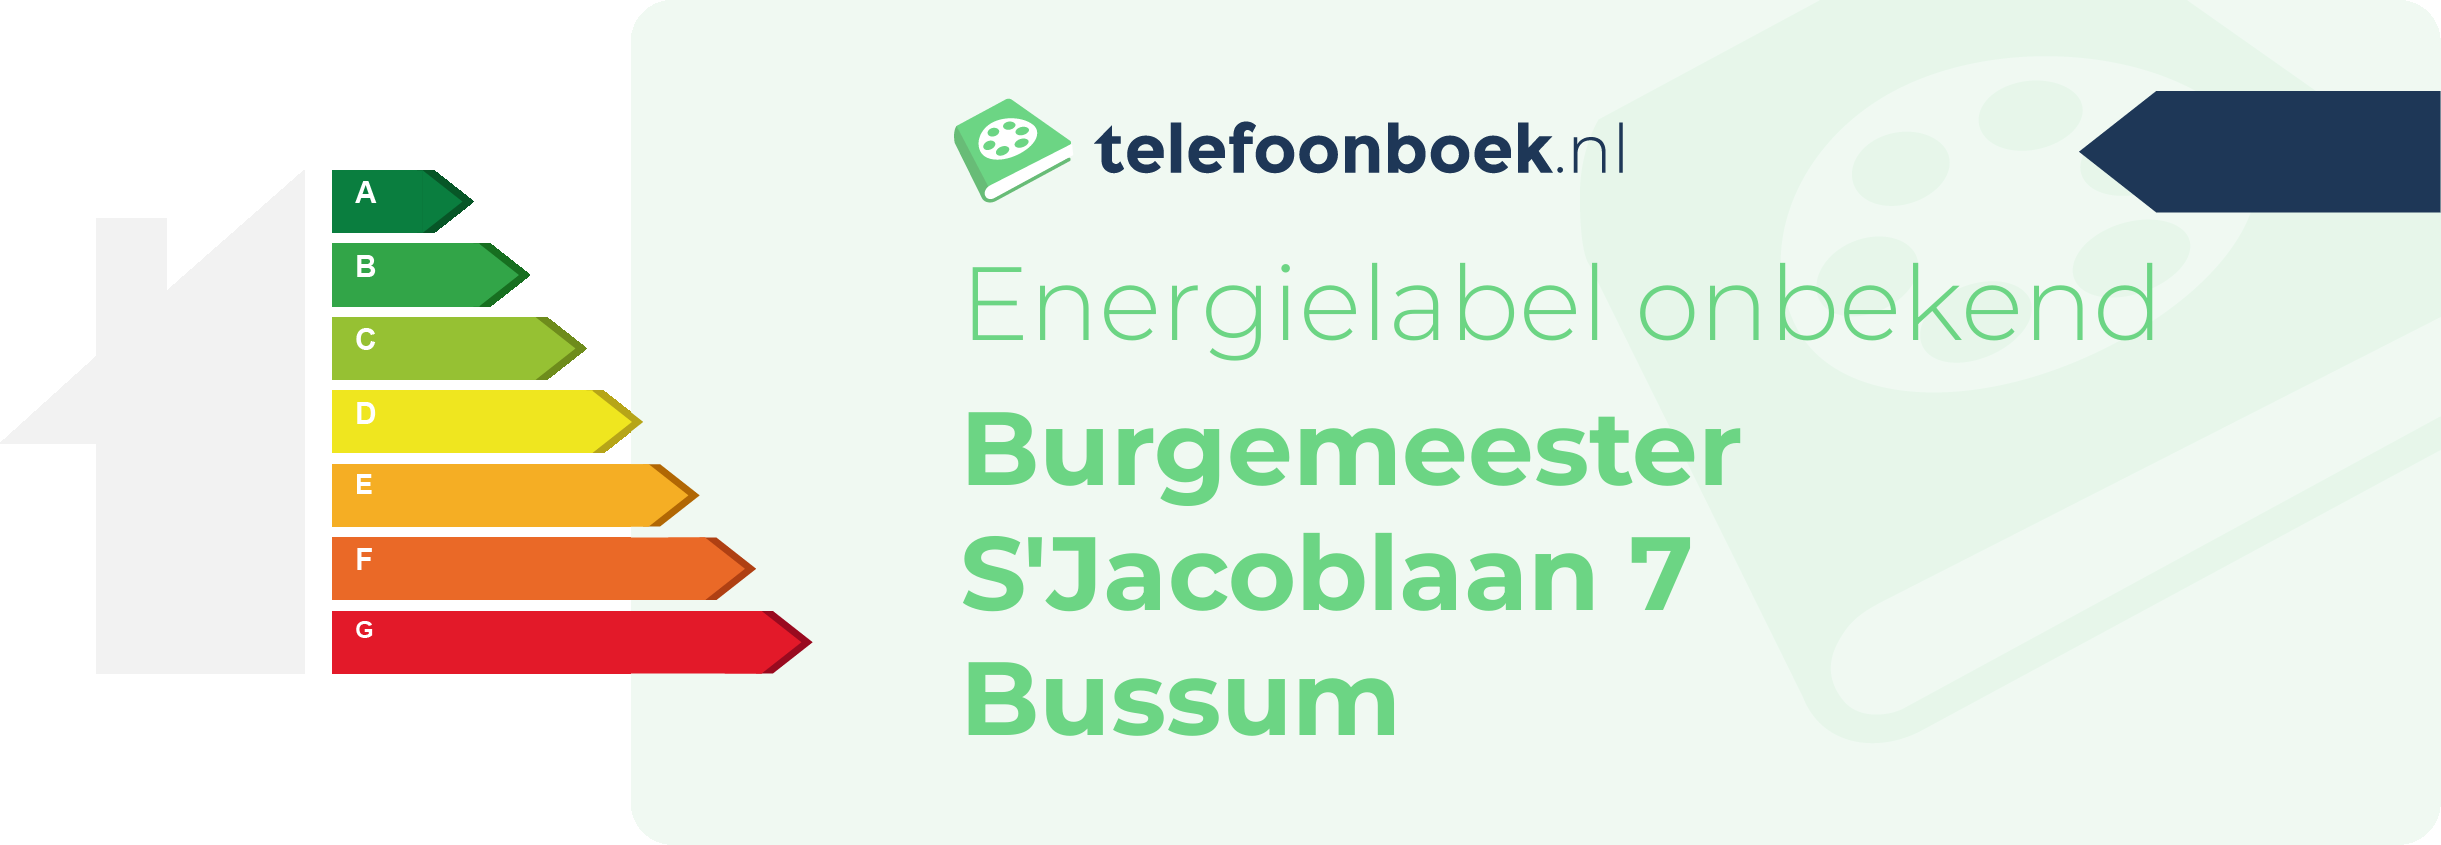 Energielabel Burgemeester S'Jacoblaan 7 Bussum